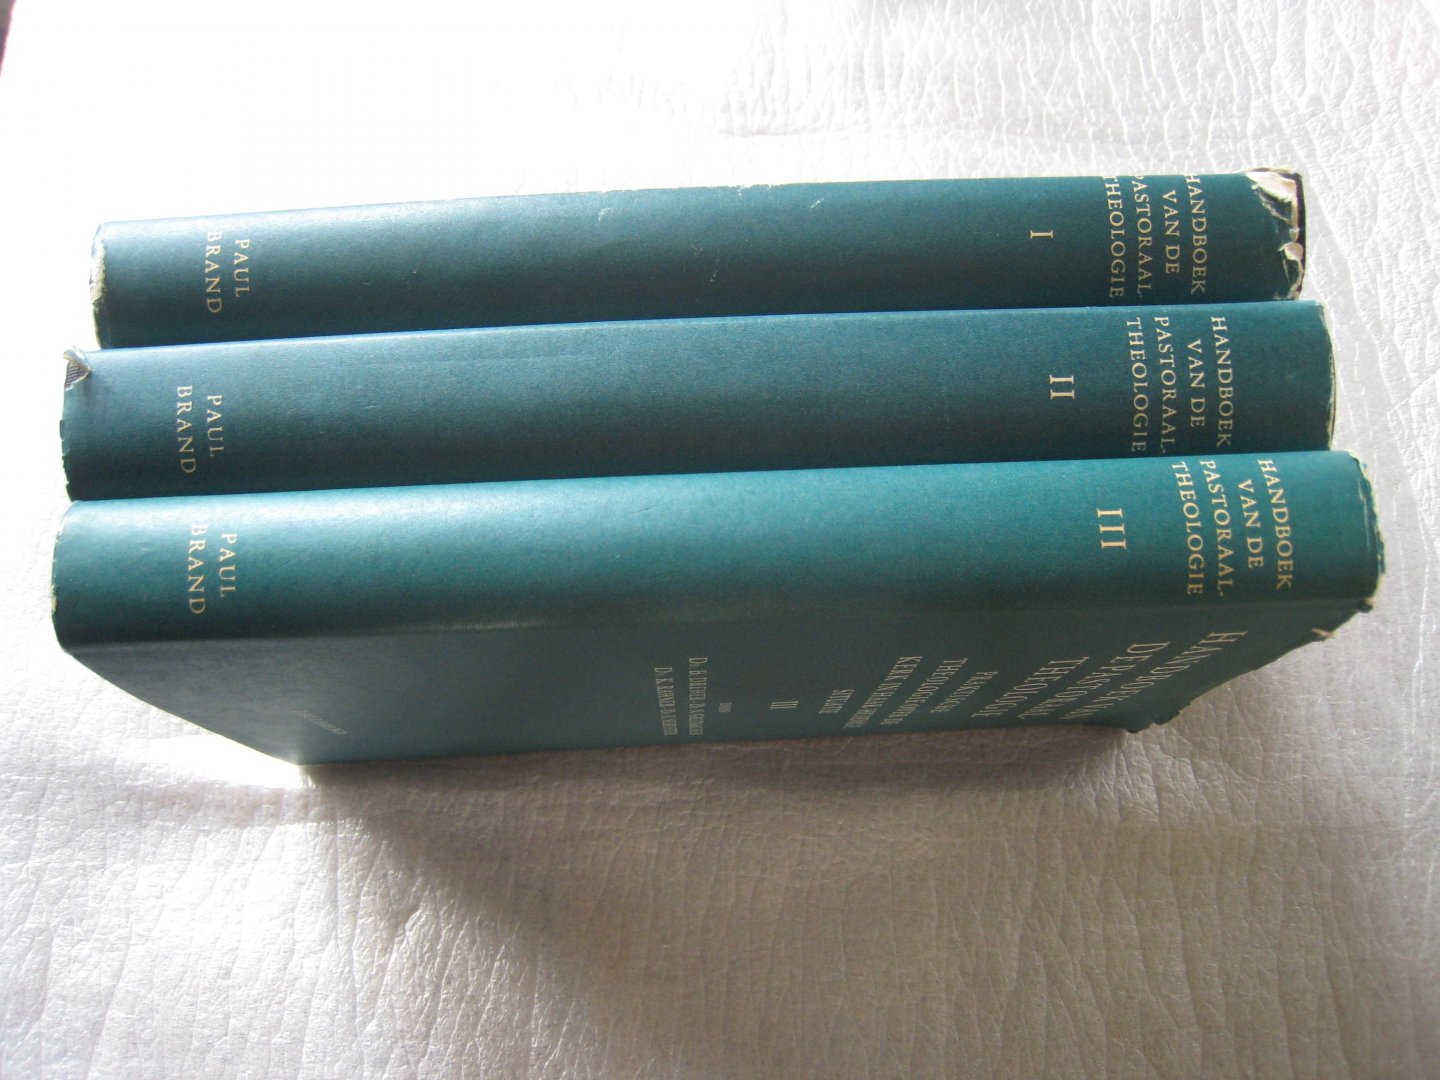 Arnold, Dr.F.X., e.a. - Handboek van de pastoraaltheologie I, II en III